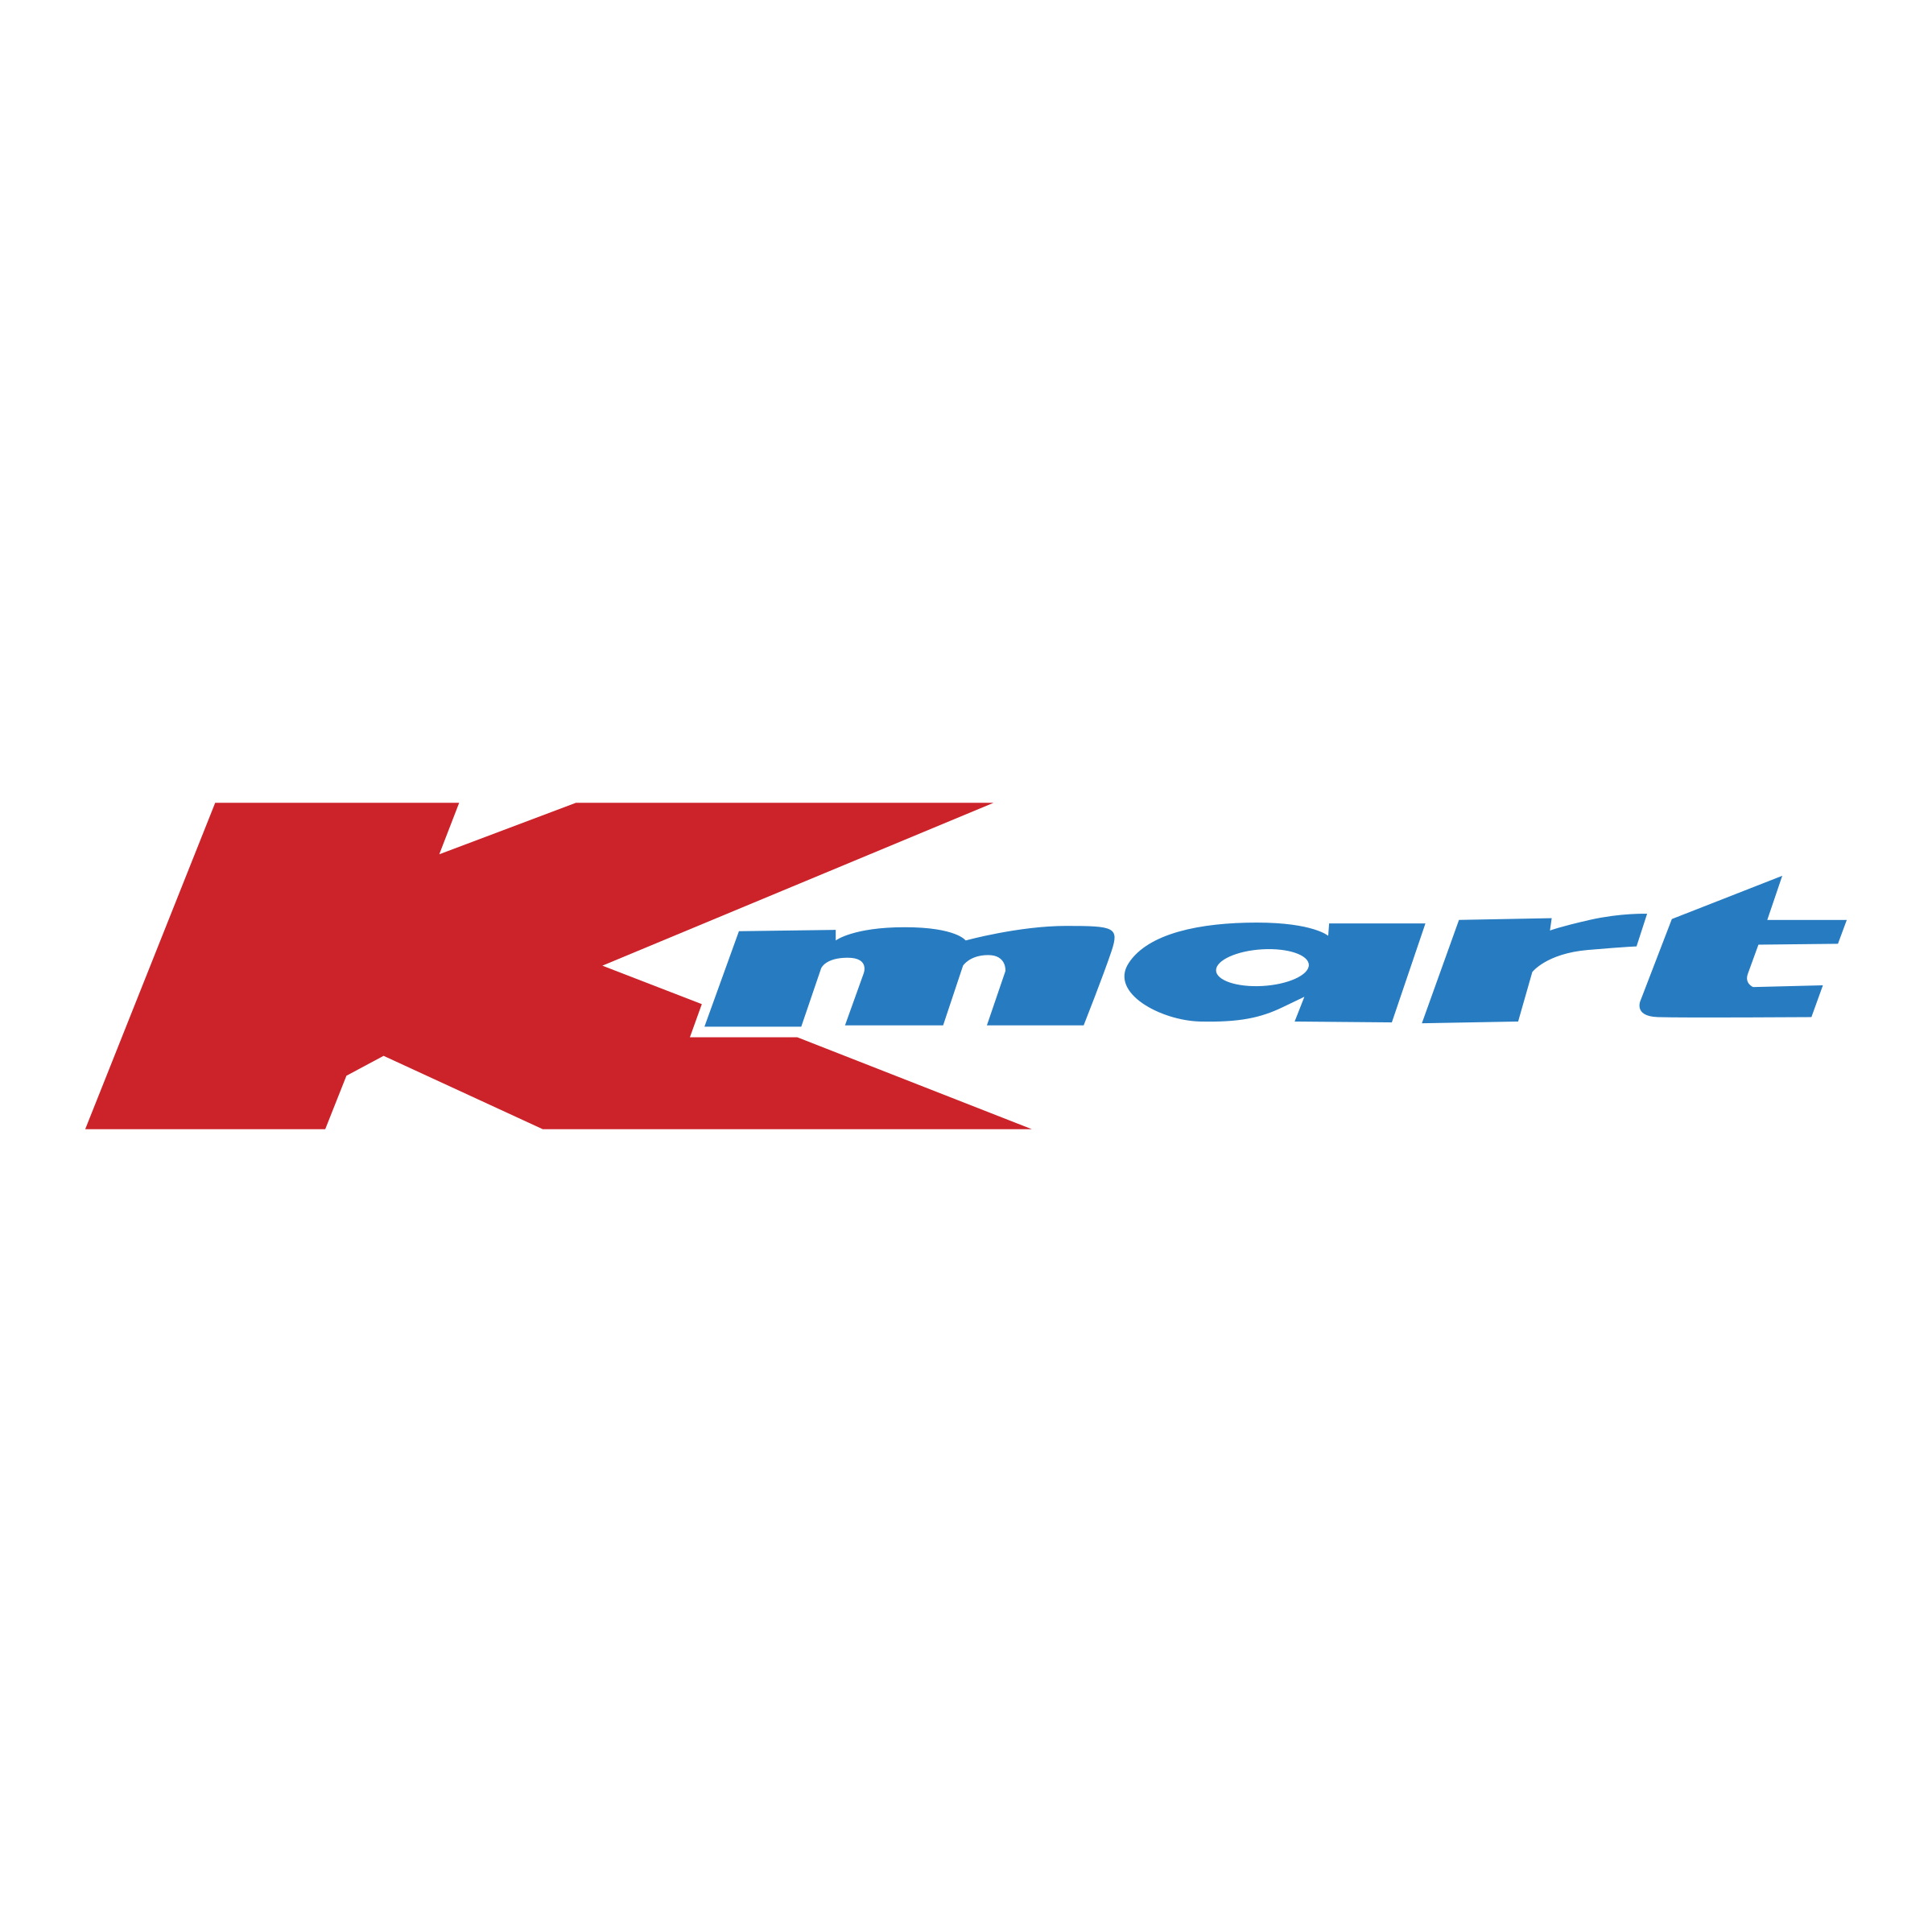 Kmart Logo PNG Transparent & SVG Vector.